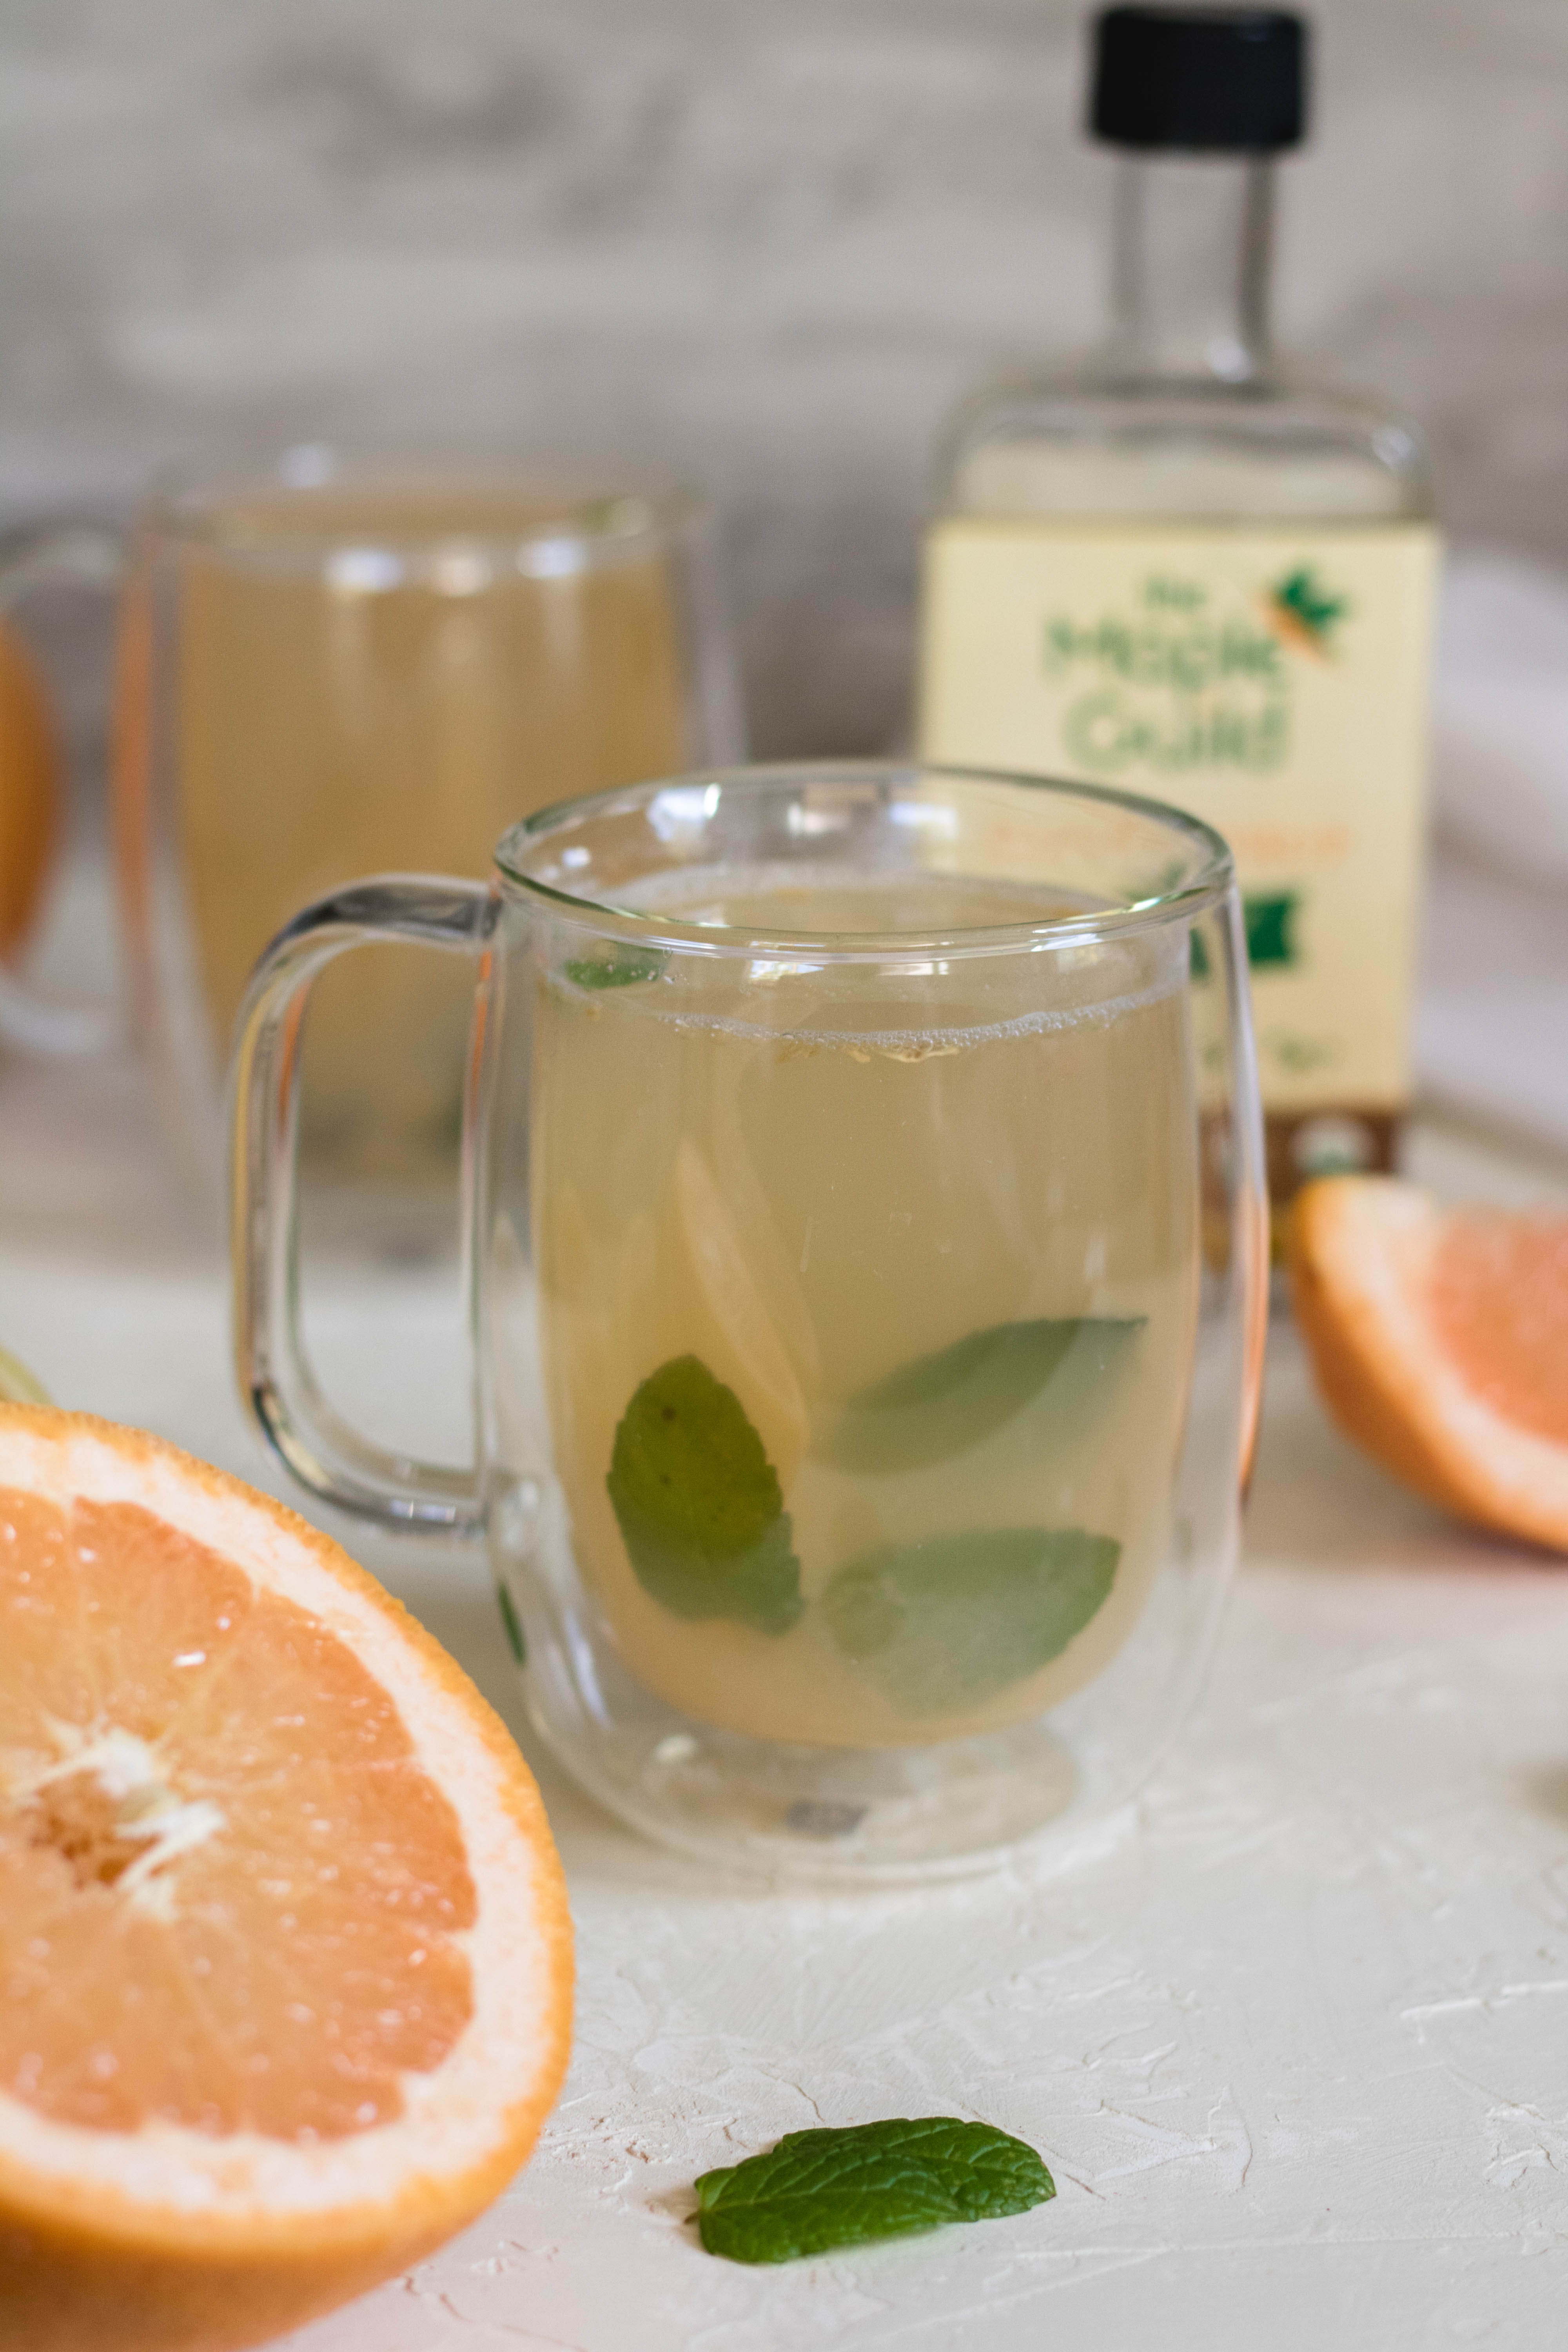 Enjoy detox mint grapefruit tea 